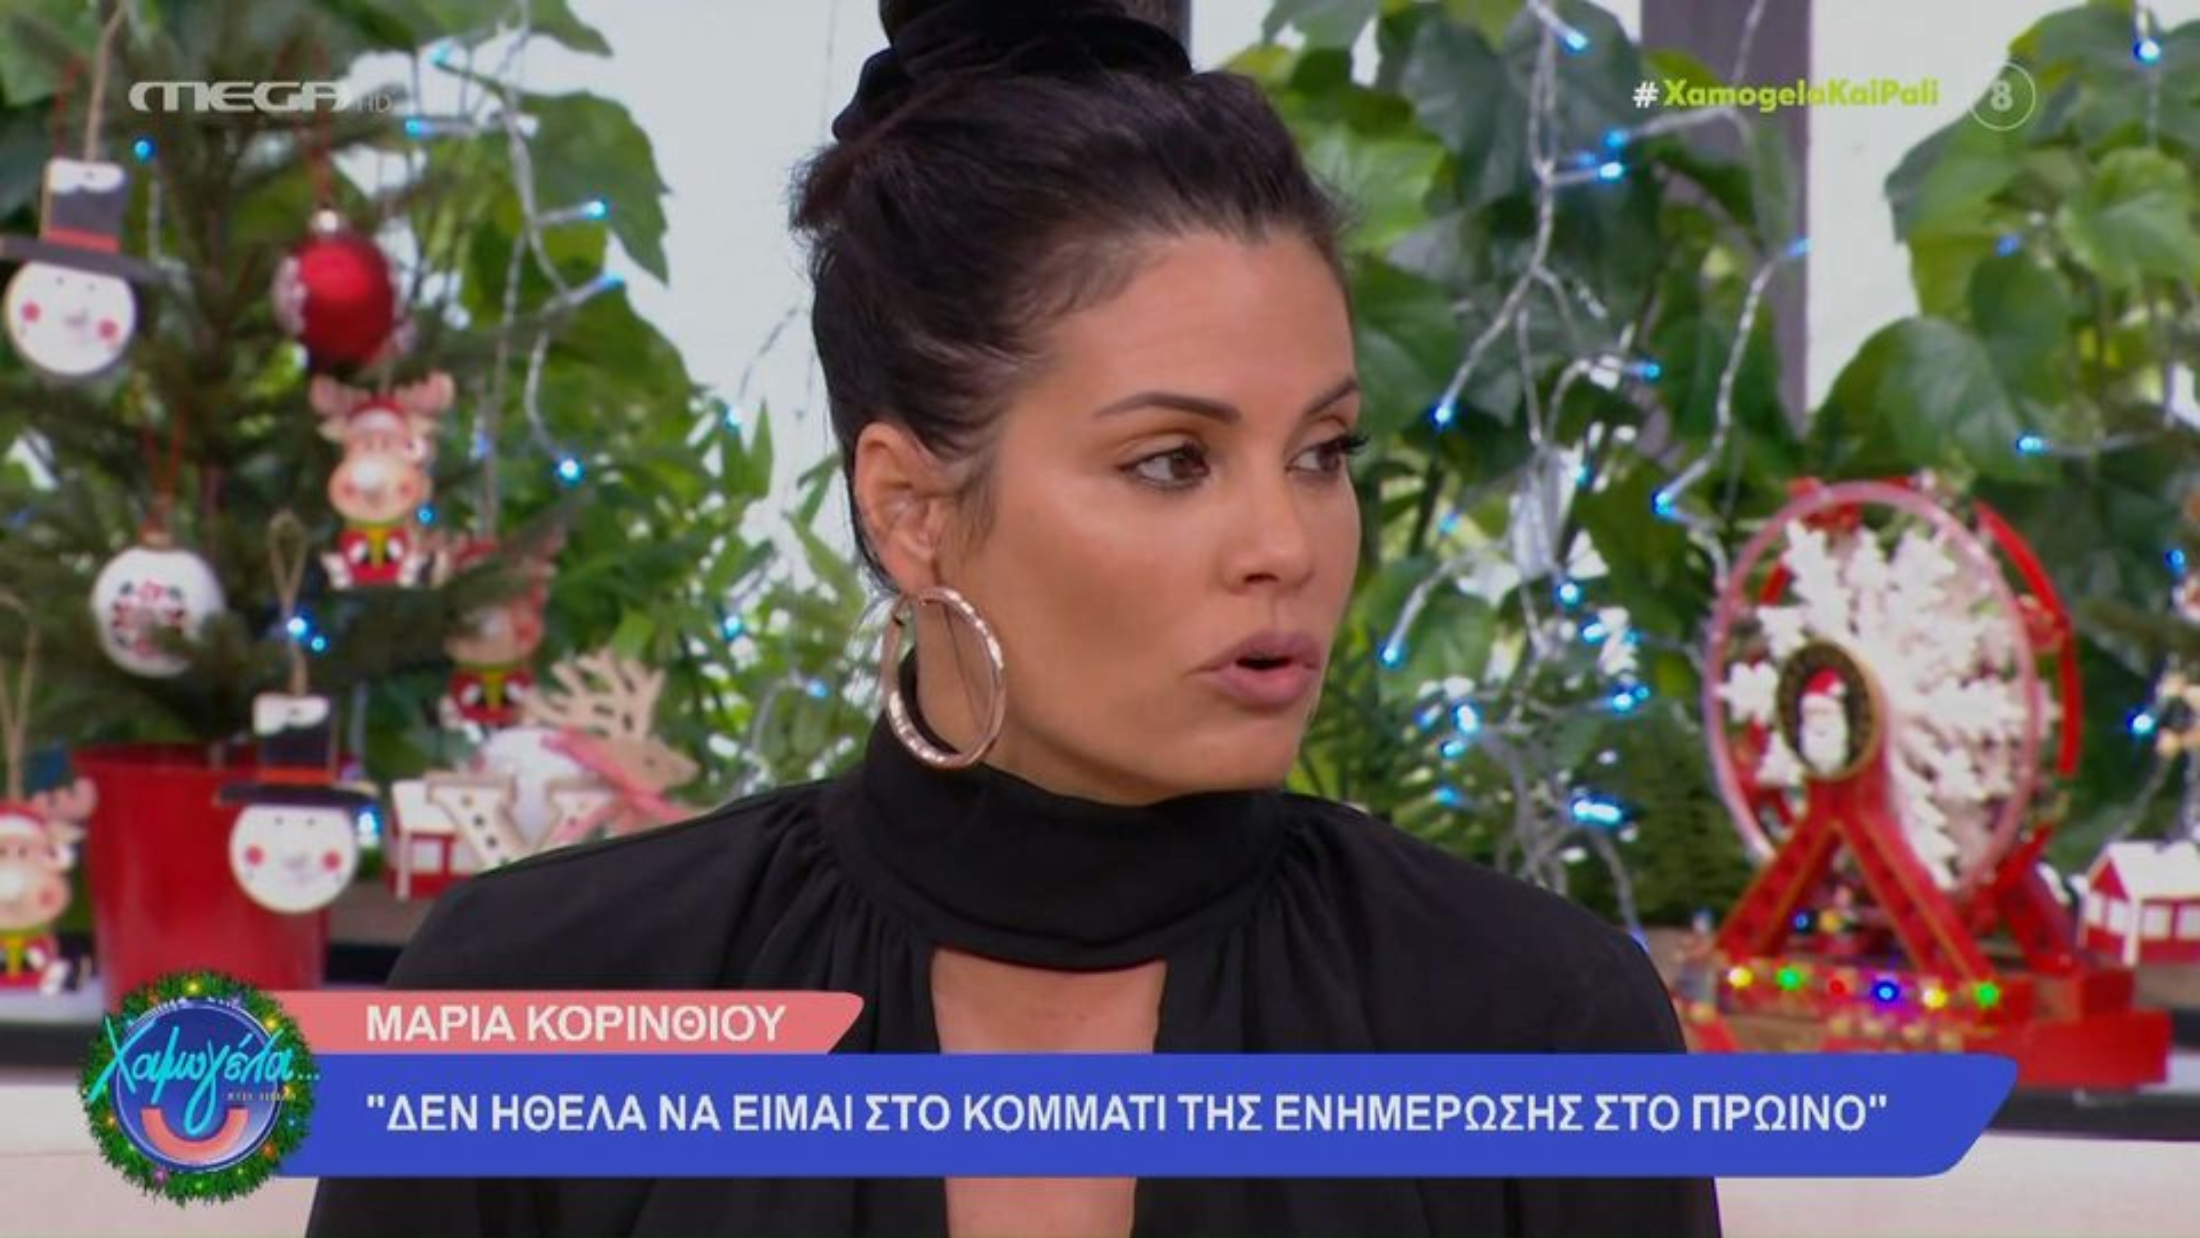 Μαρία Κορινθίου: Αυτή ήταν εξαρχής η συμφωνία με τον ΑΝΤ1 (VIDEO)